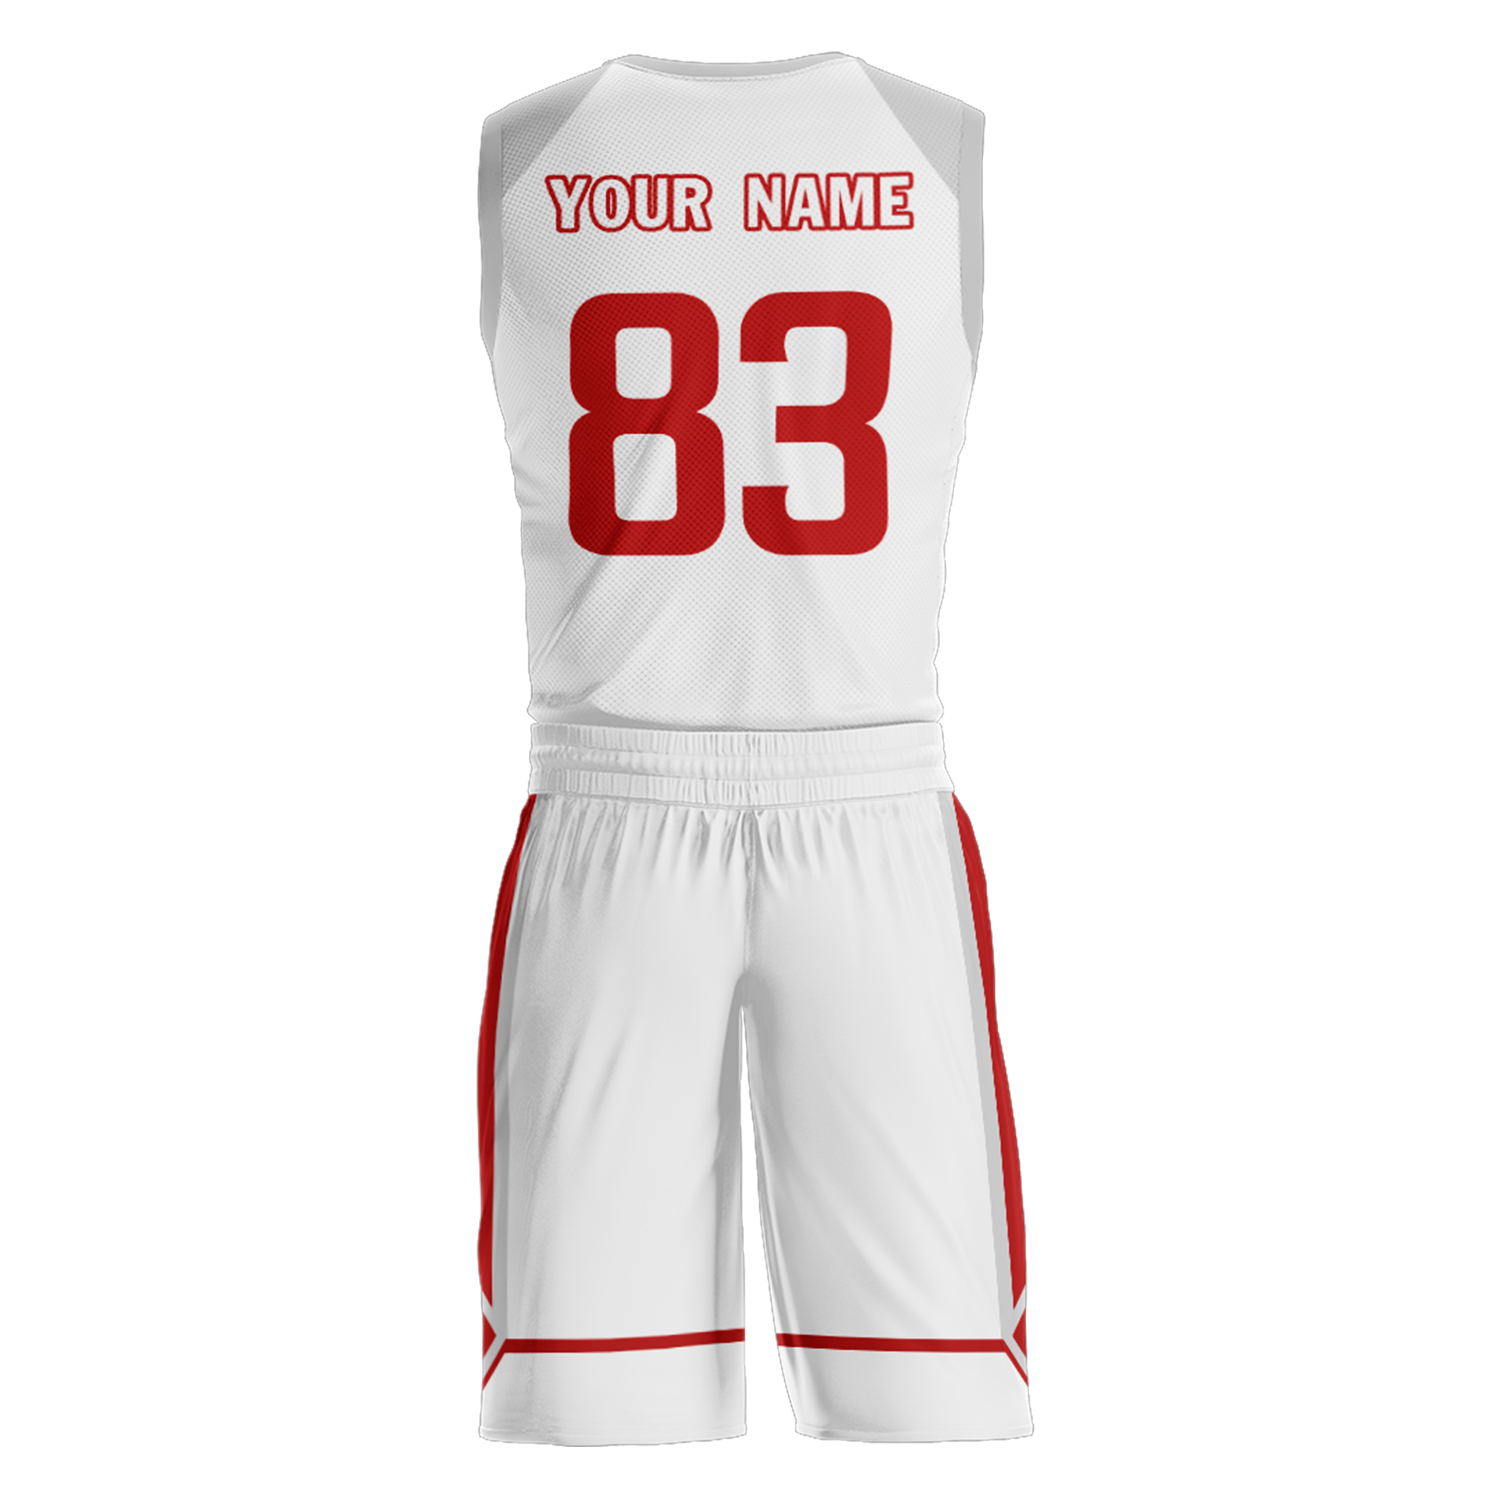 Custom Poland Team Basketball Suits